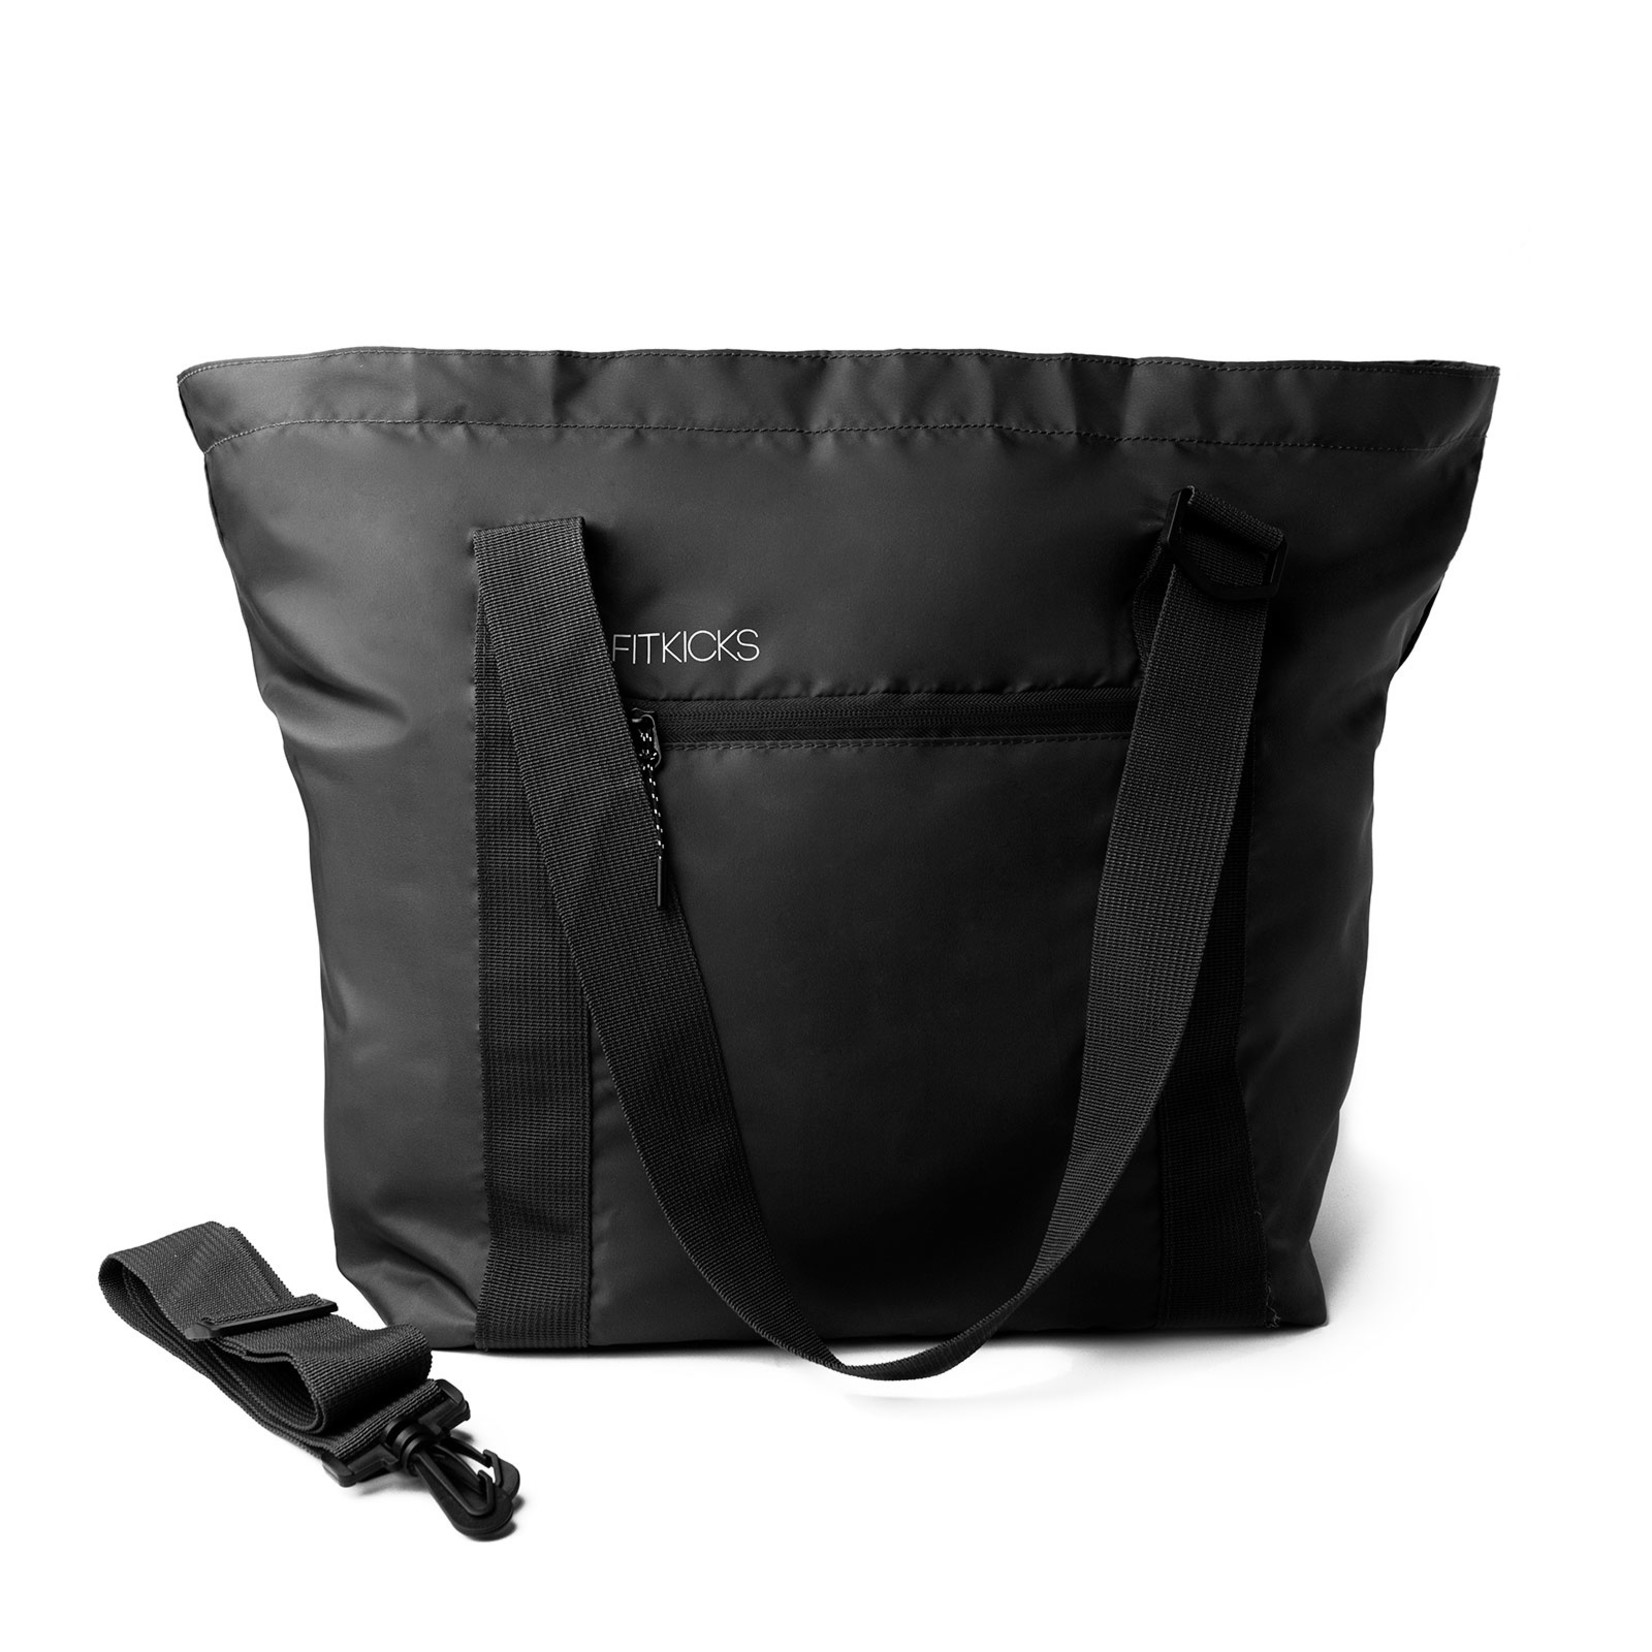 Fitkicks - Hideaway Packable Duffle - Black